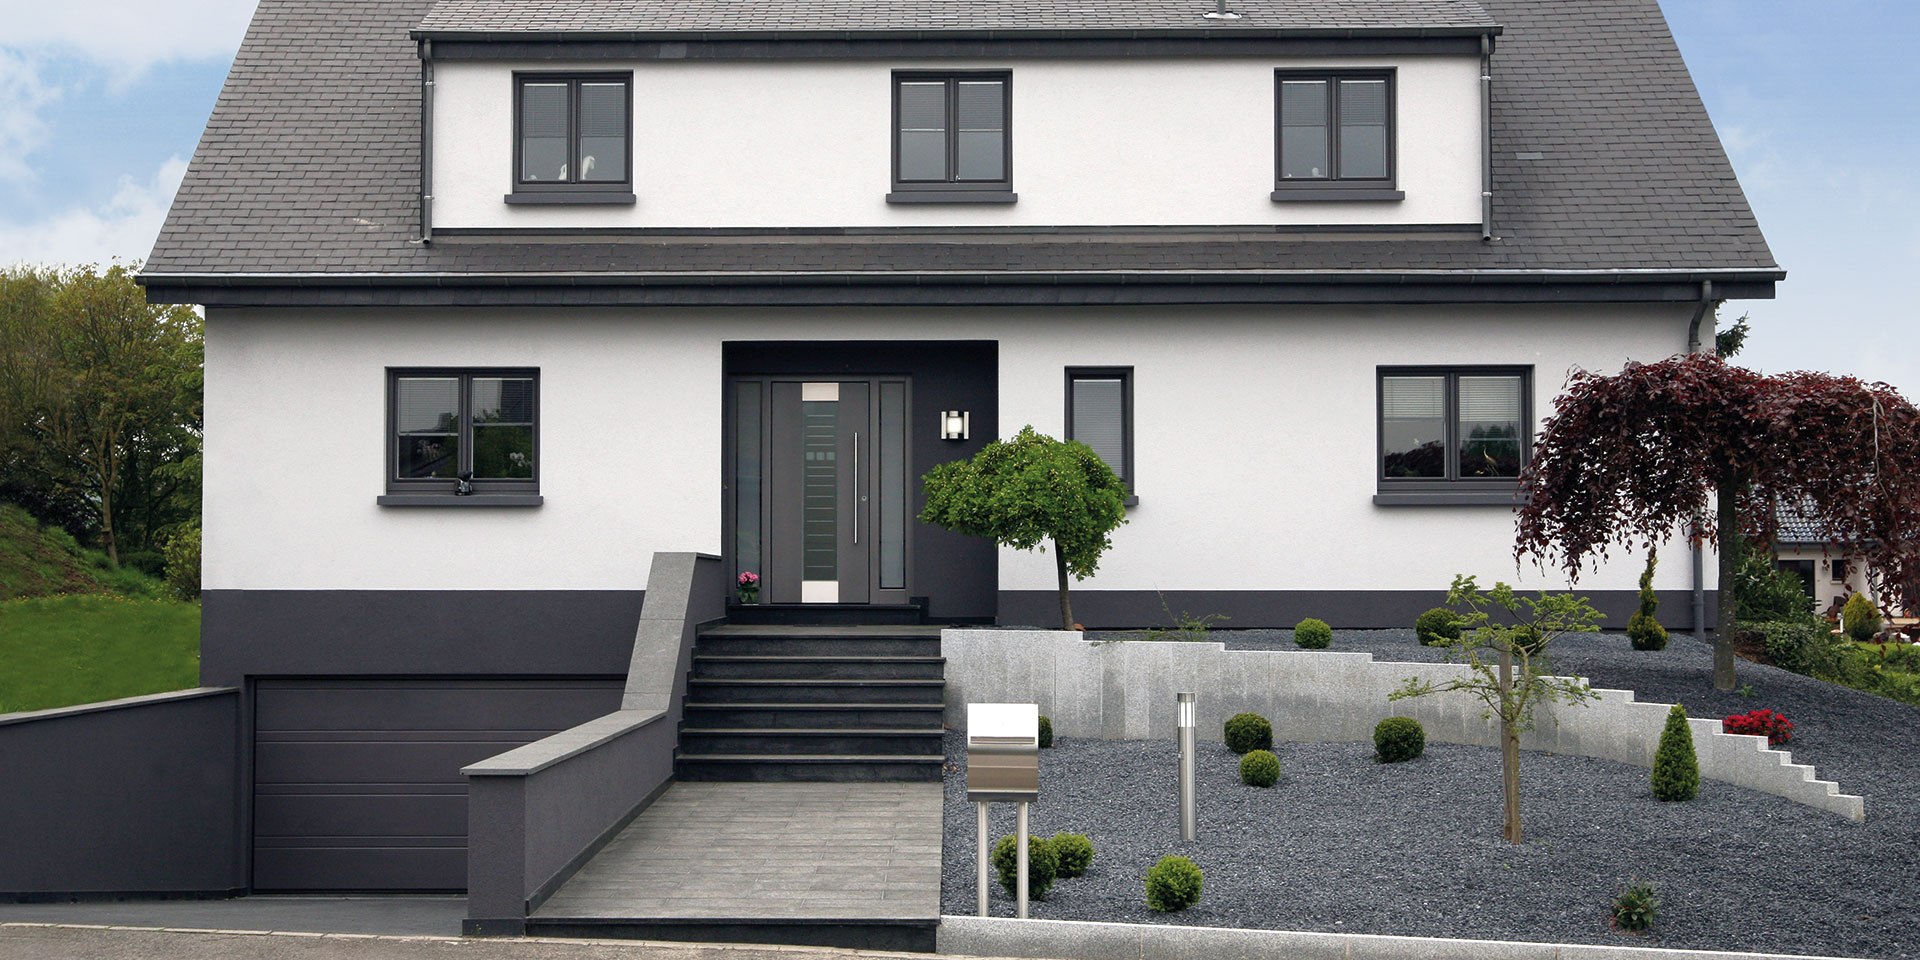 Modernes grau-weißes Einfamilienhaus mit grauer moderner Coplaning Haustür und grauen Coplaning Fenster.